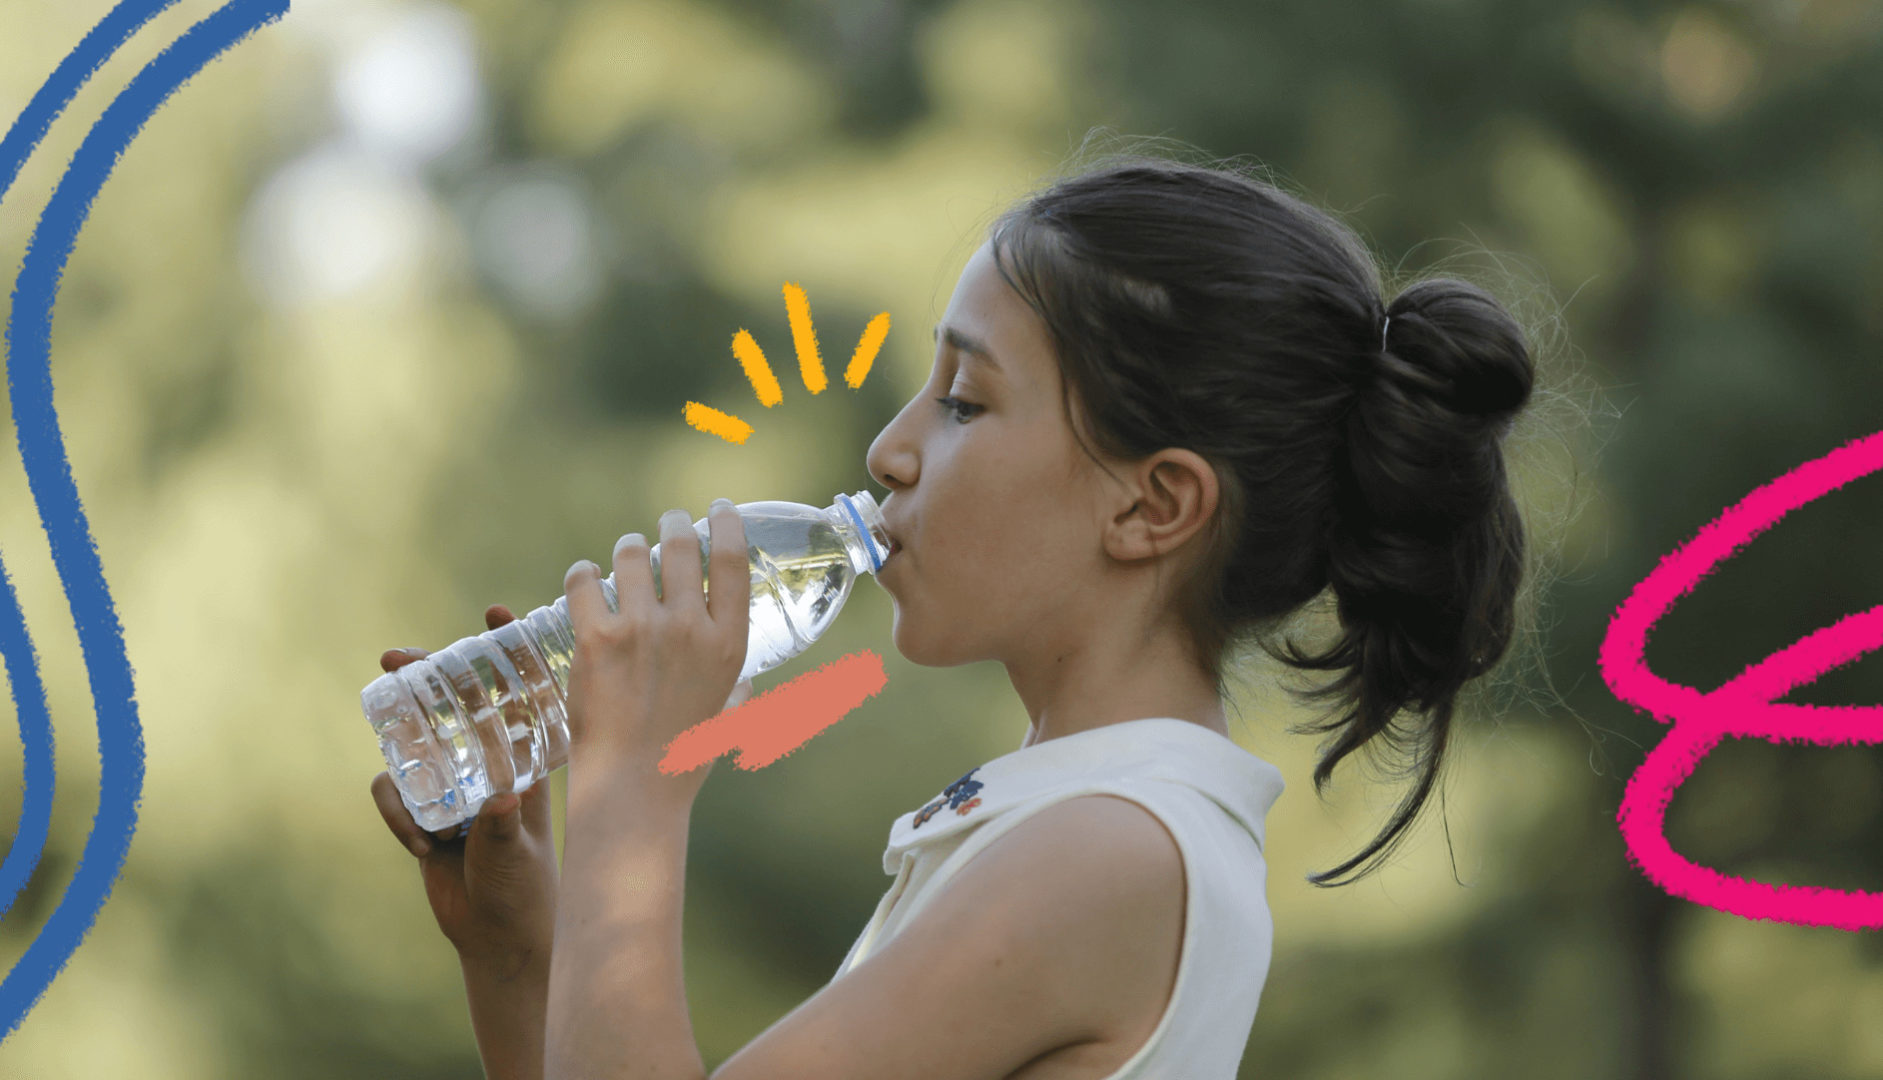 Uma menina bebe uma garrafa de água. A imagem ilustra matéria sobre como proteger as crianças durante a onda de calor.